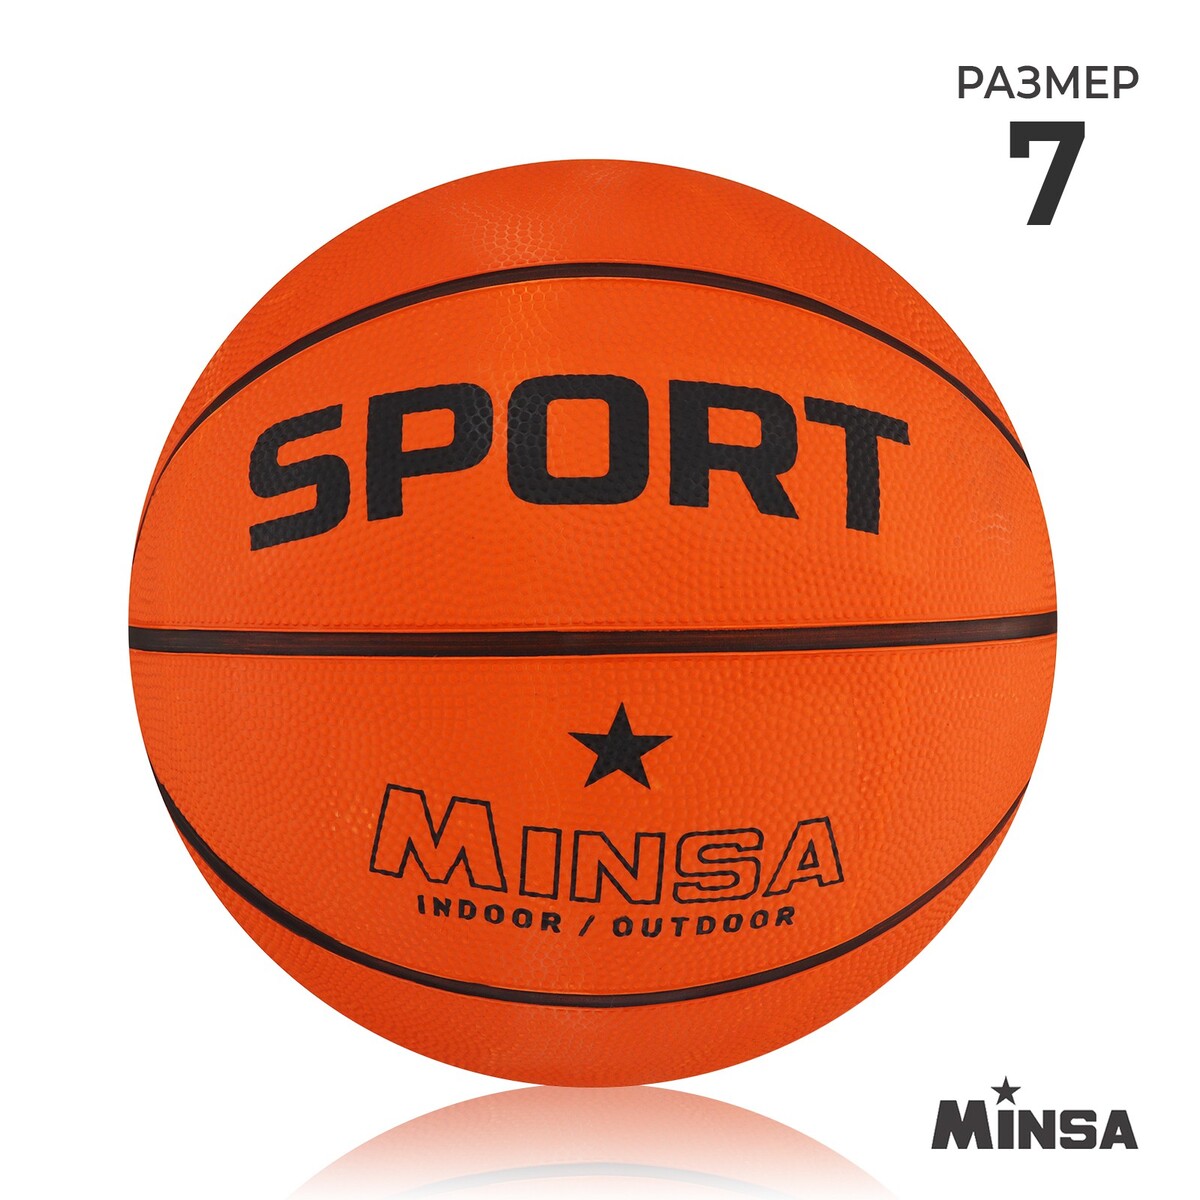 Мяч баскетбольный minsa sport, пвх, клееный, 8 панелей, р. 7 мяч баскетбольный torres bm300 b00015 резина клееный 8 панелей р 5